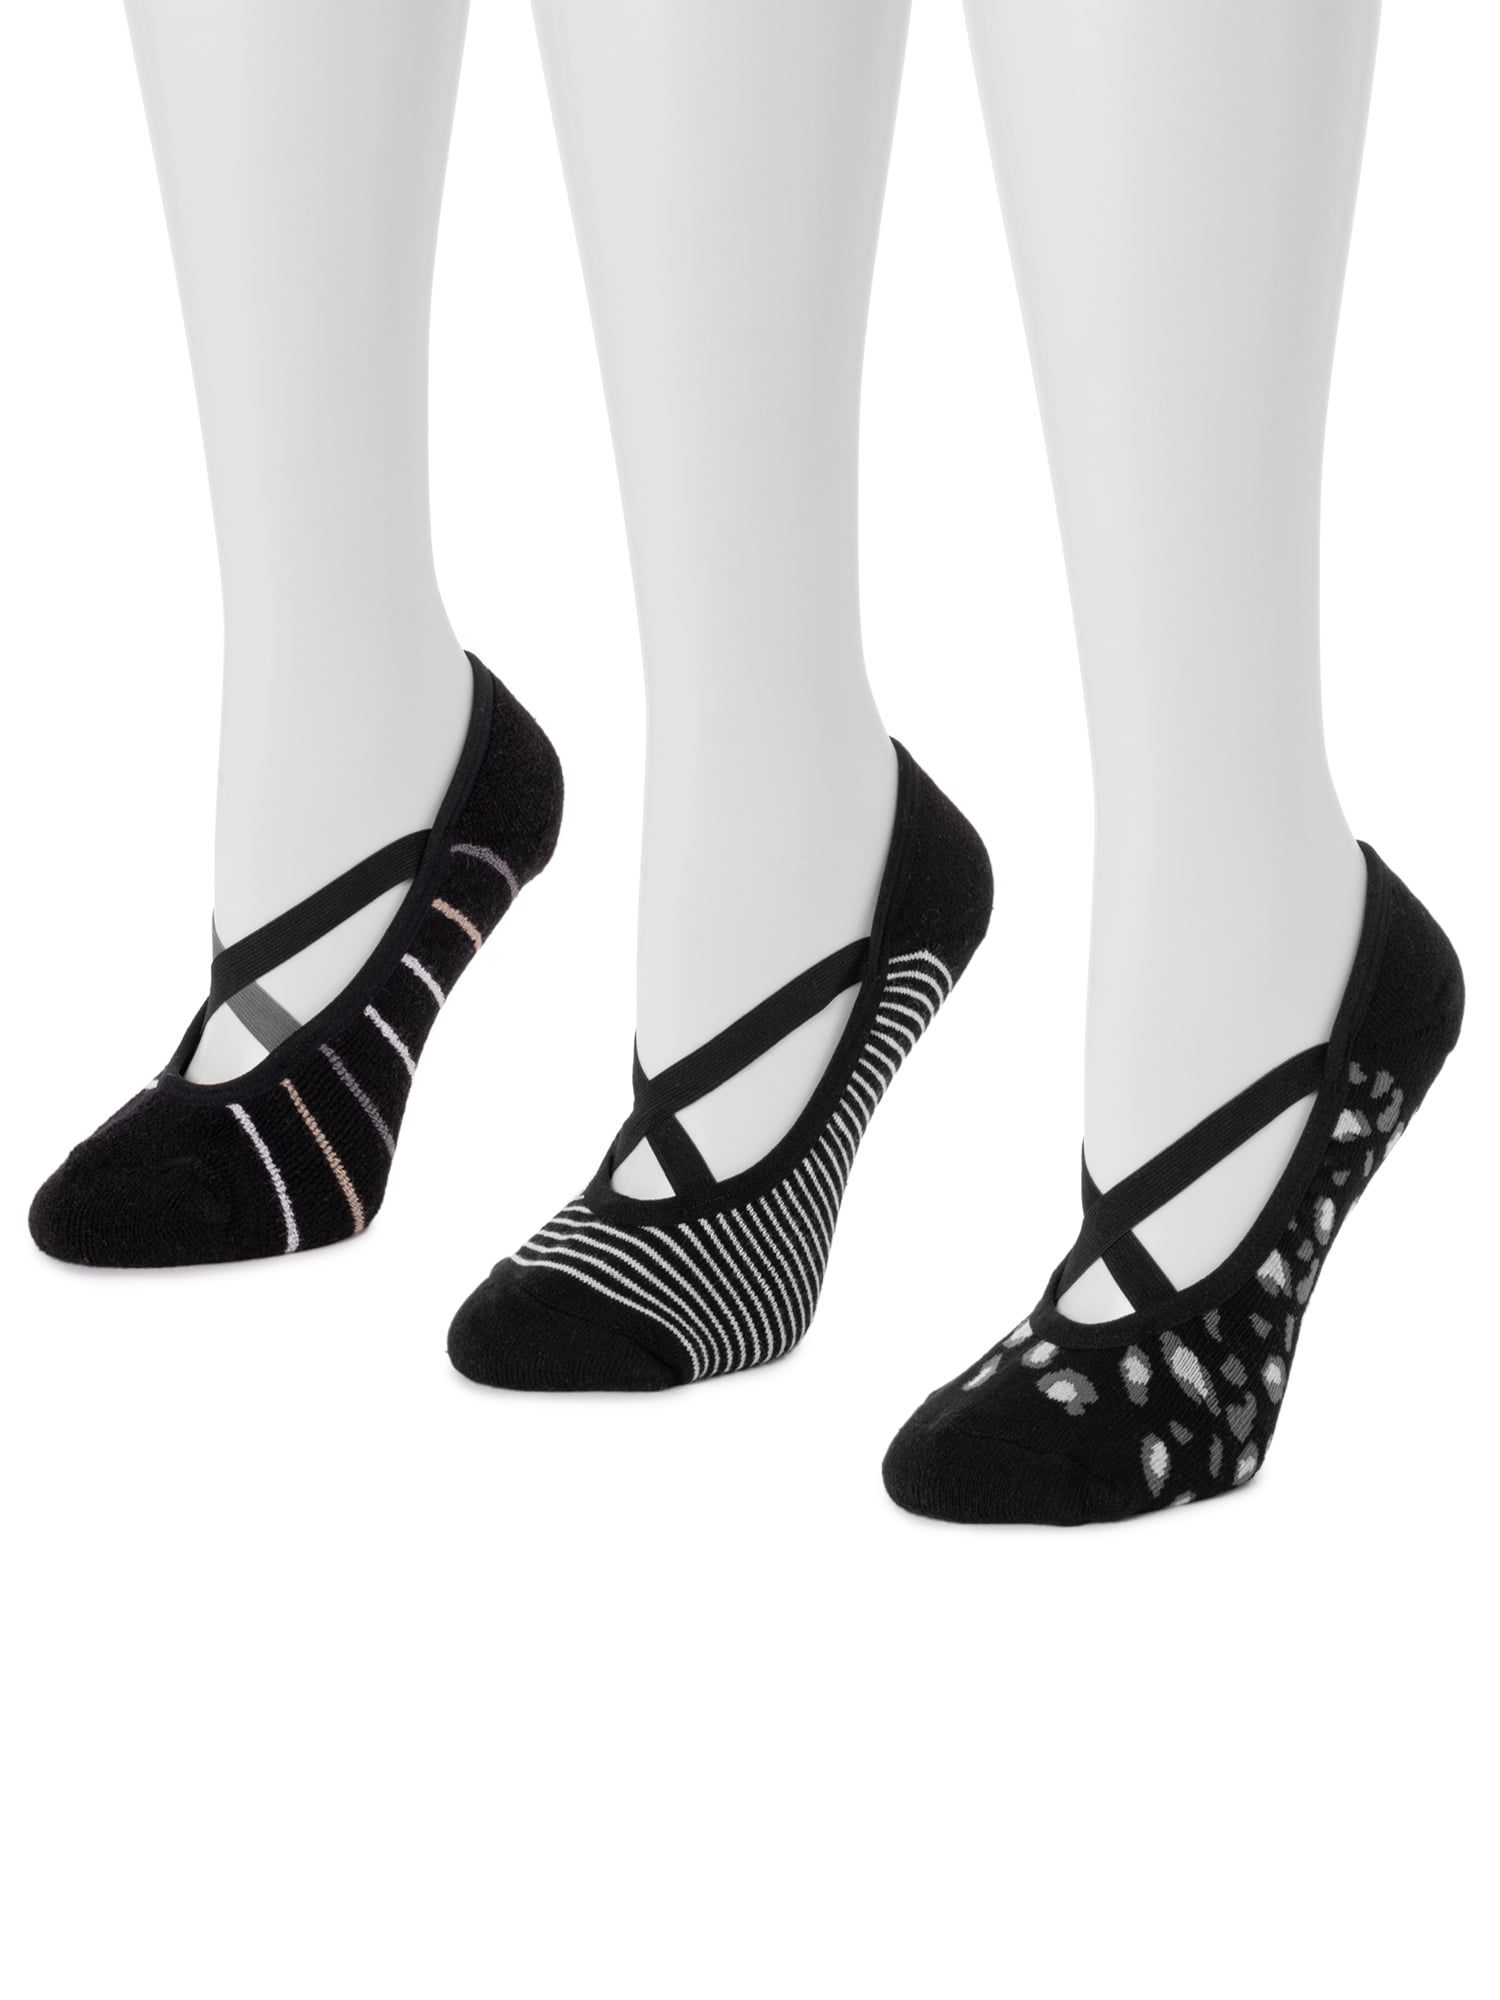 Luk ees Ballerina Slipper Black&wh socks by Muk Luks Nonslip Wom size L/XL  8-10